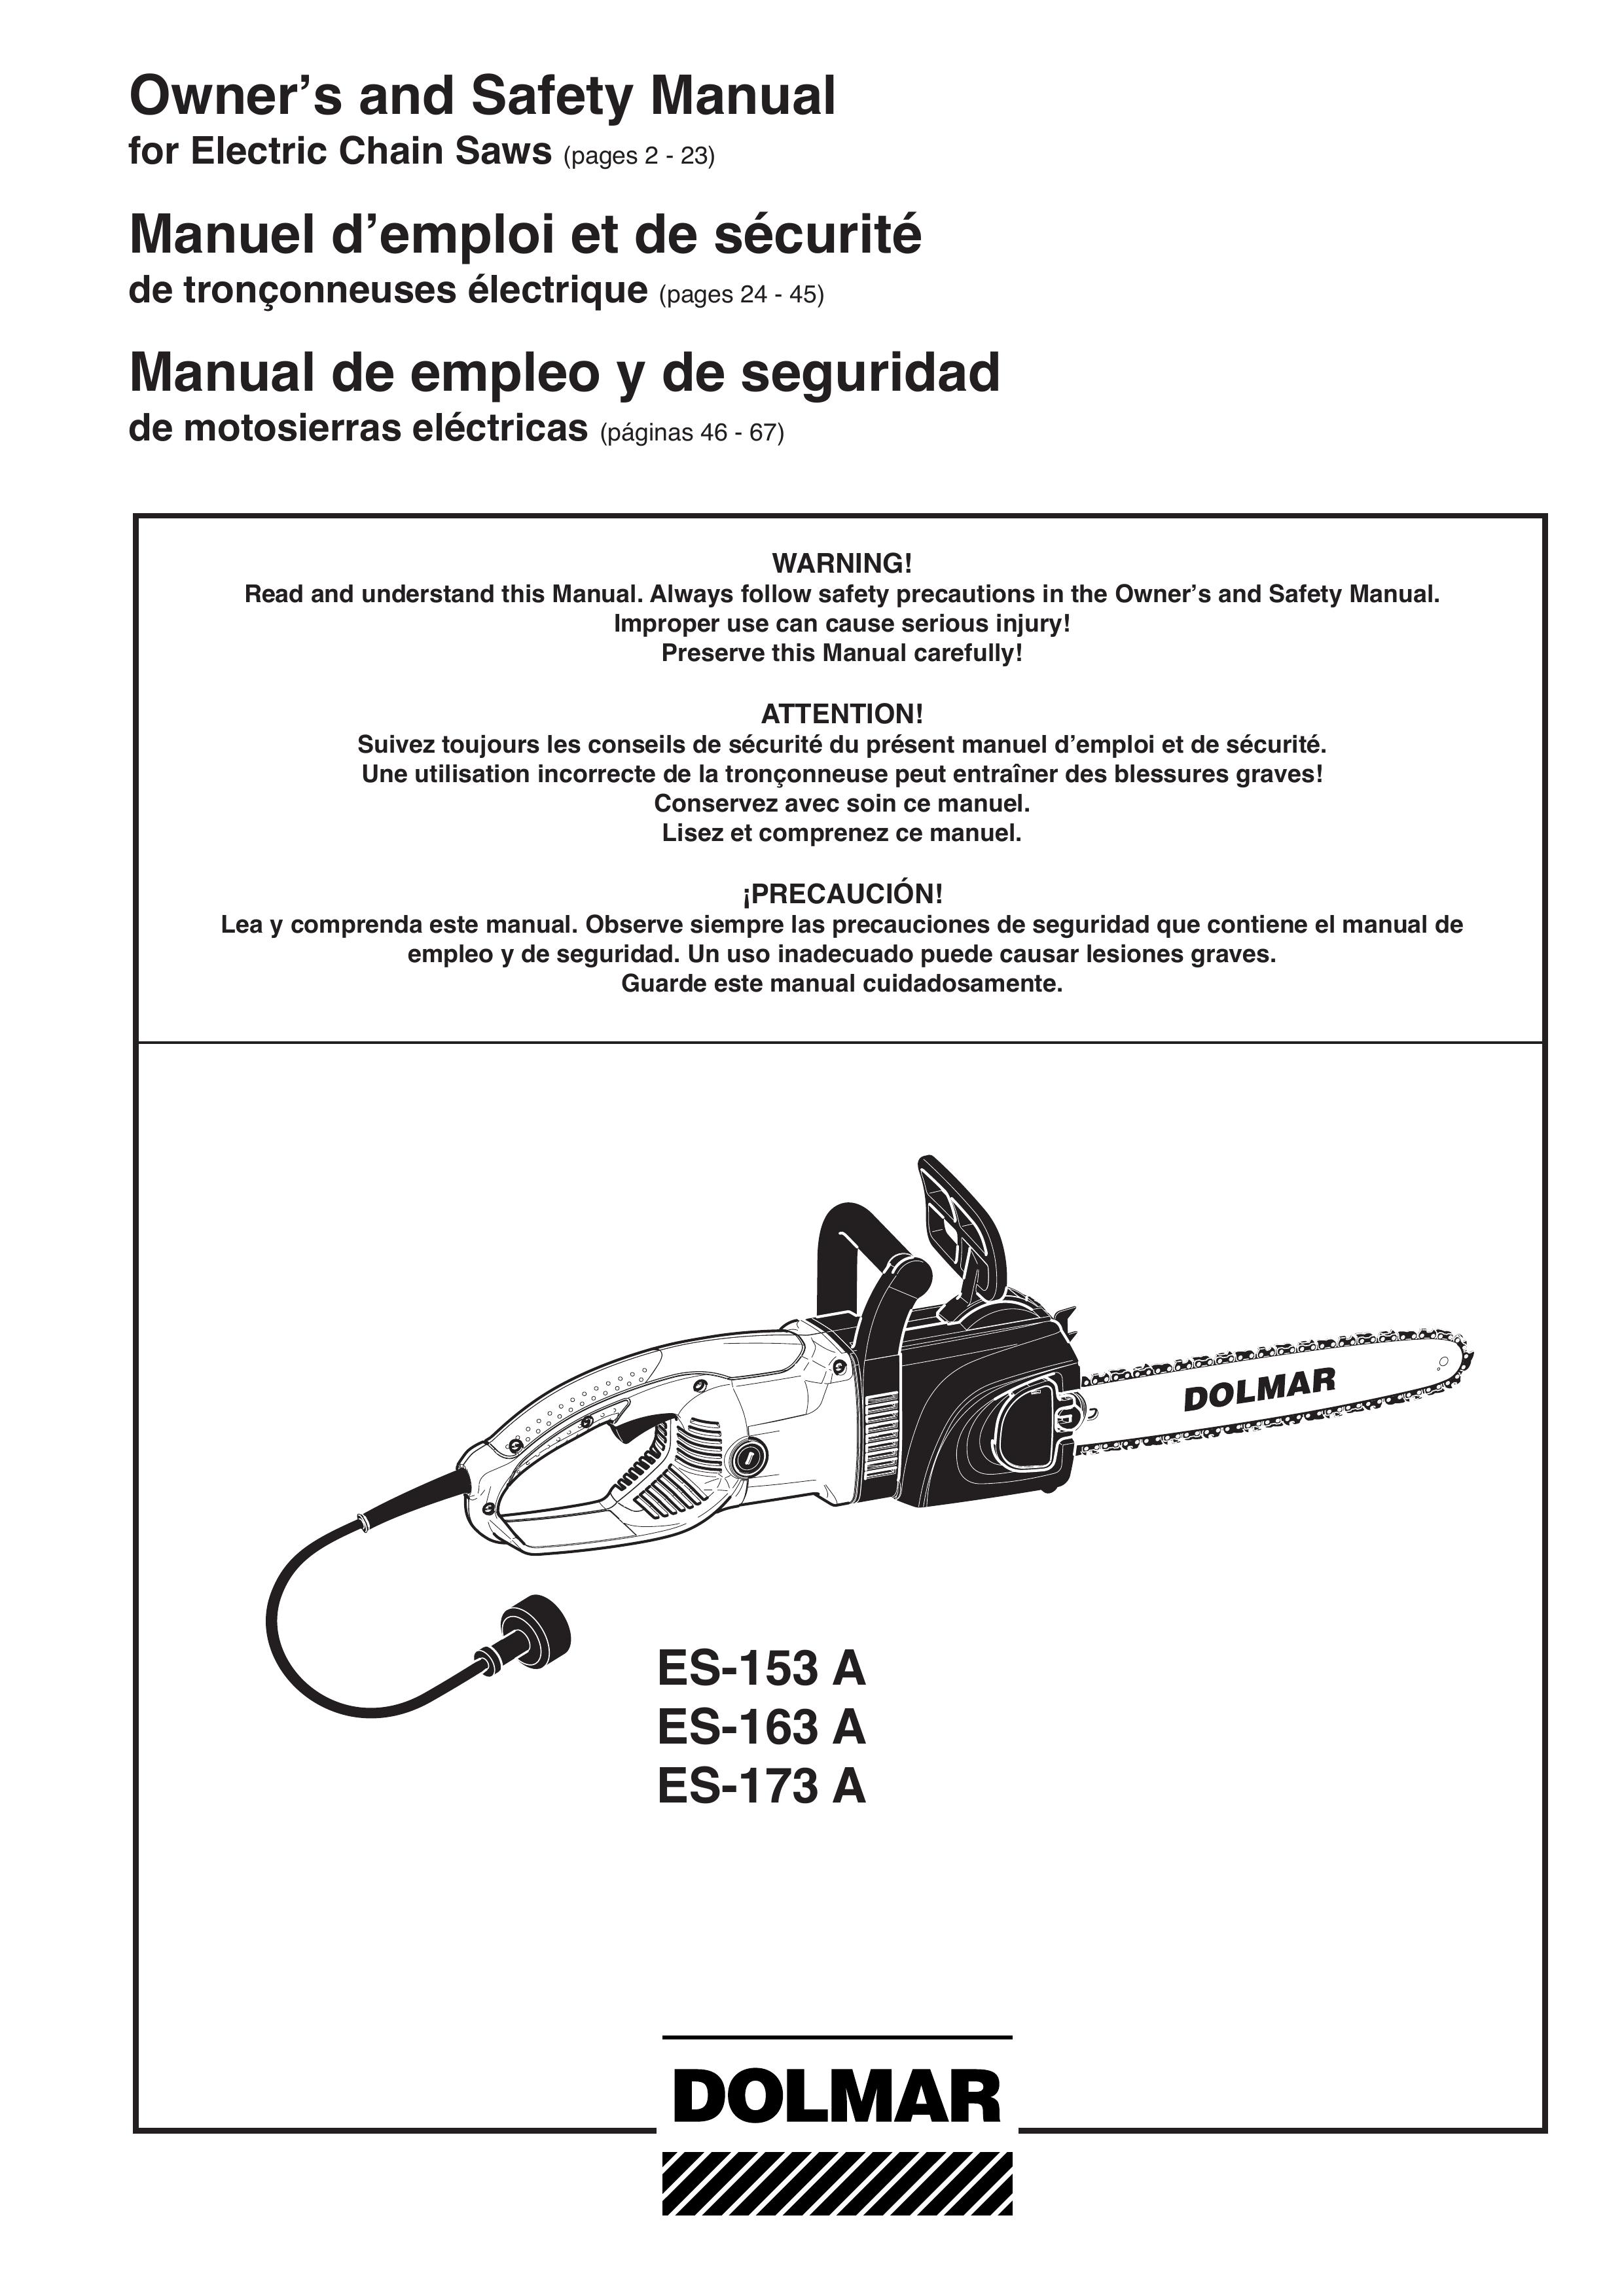 Dolmar ES-153 A Chainsaw User Manual